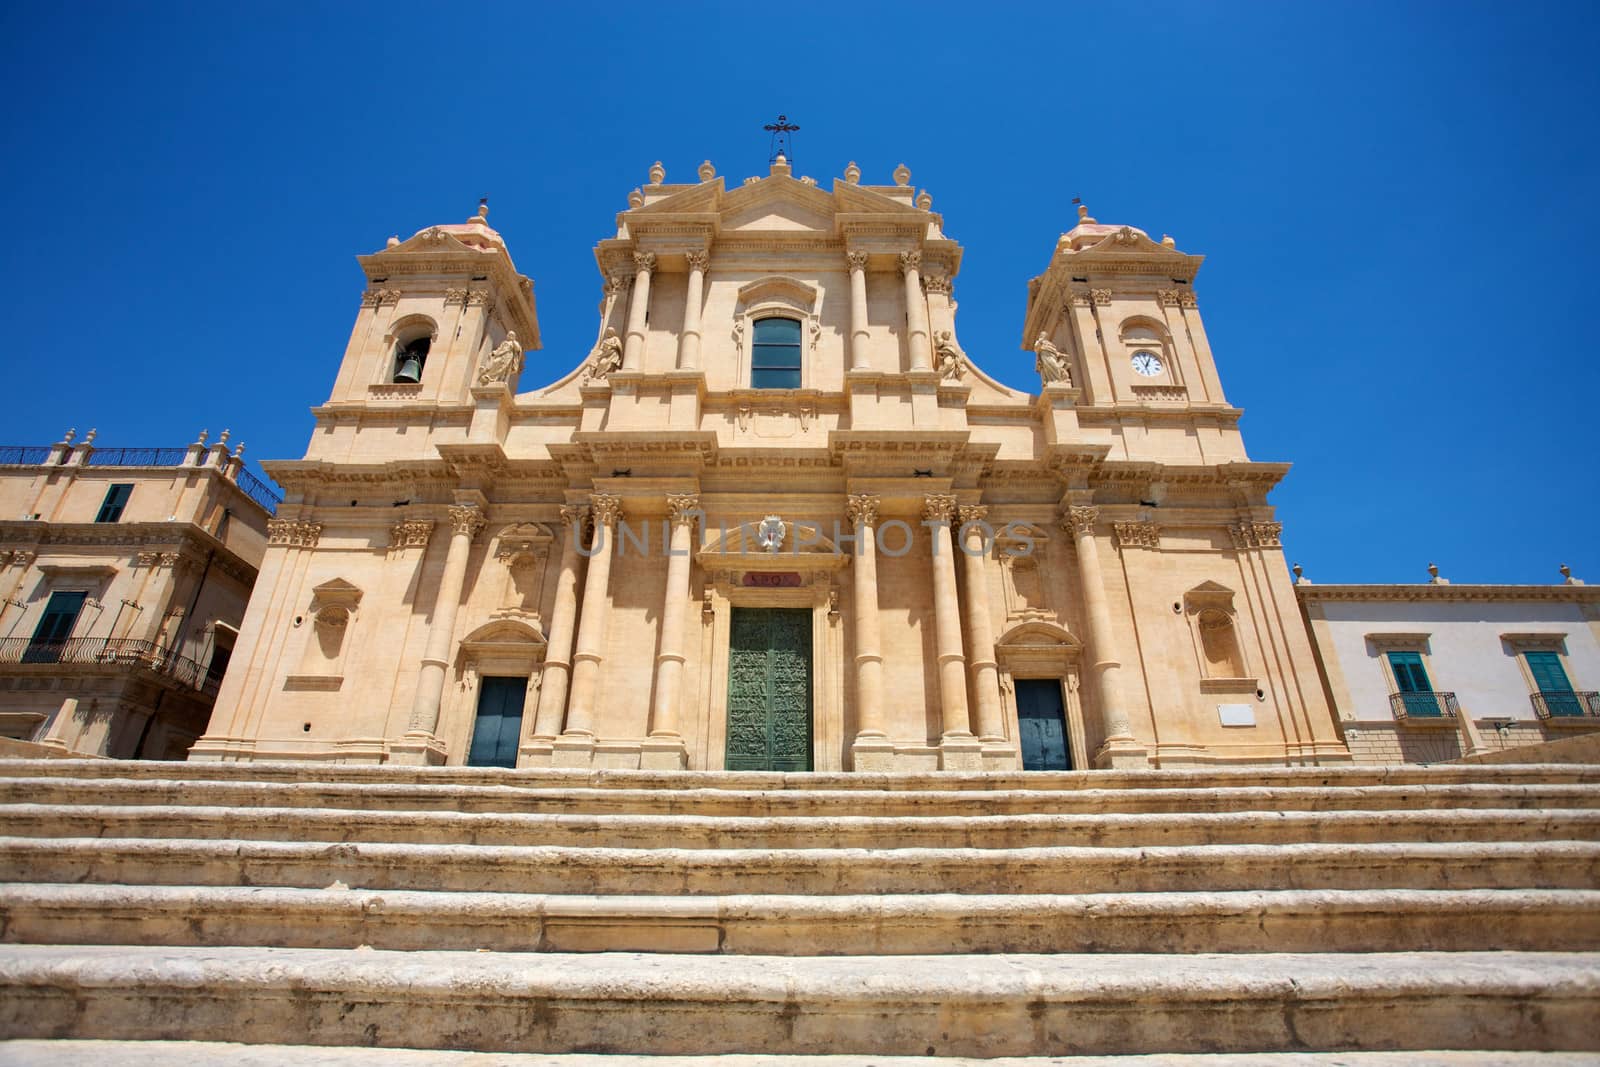 Baroque church San Francesco in Noto, Sicily